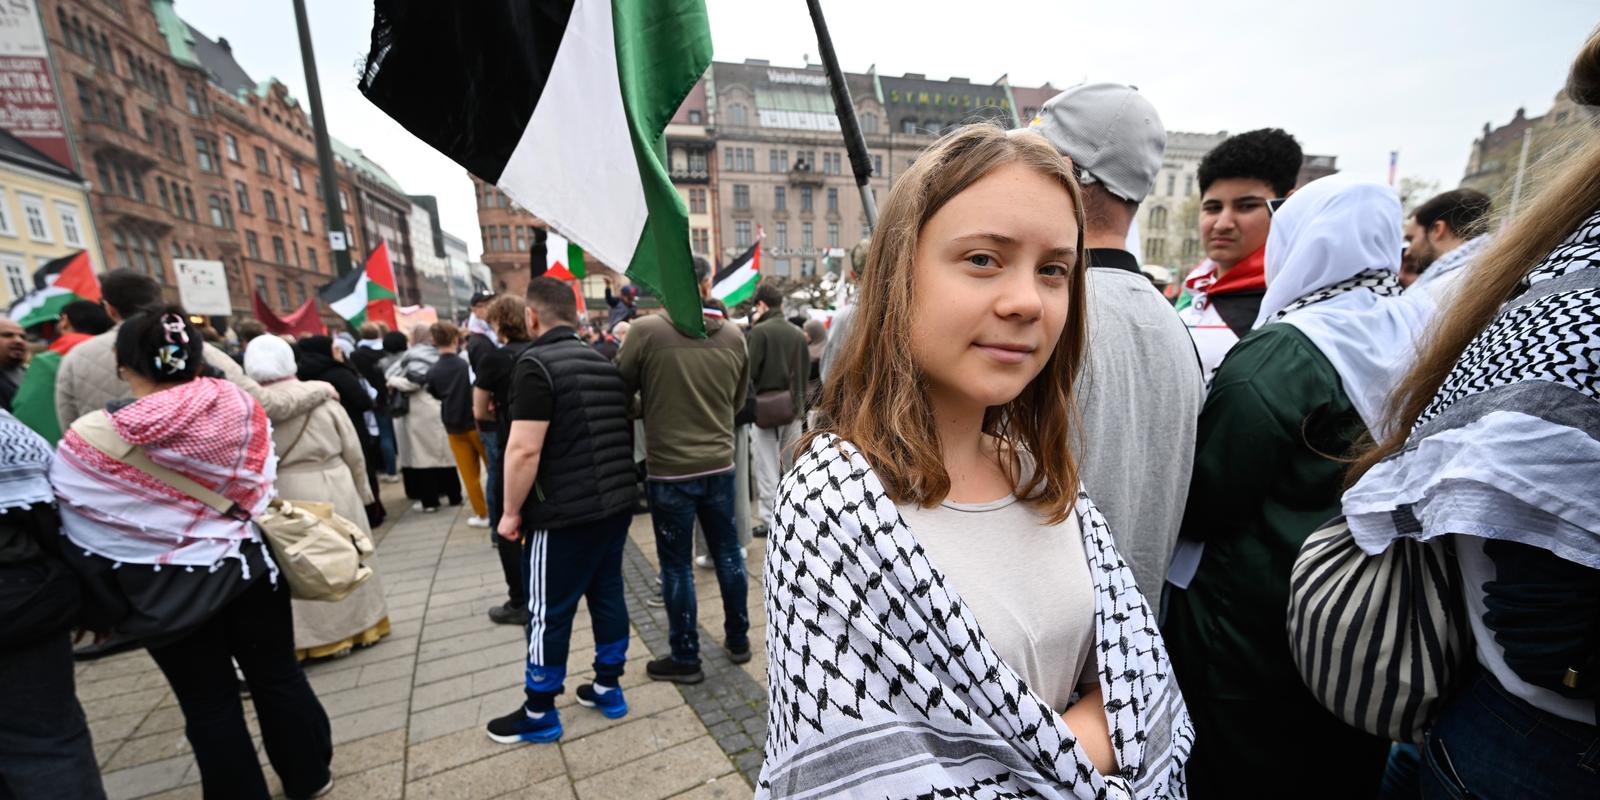 thunberg: fint att så många står upp för palestina